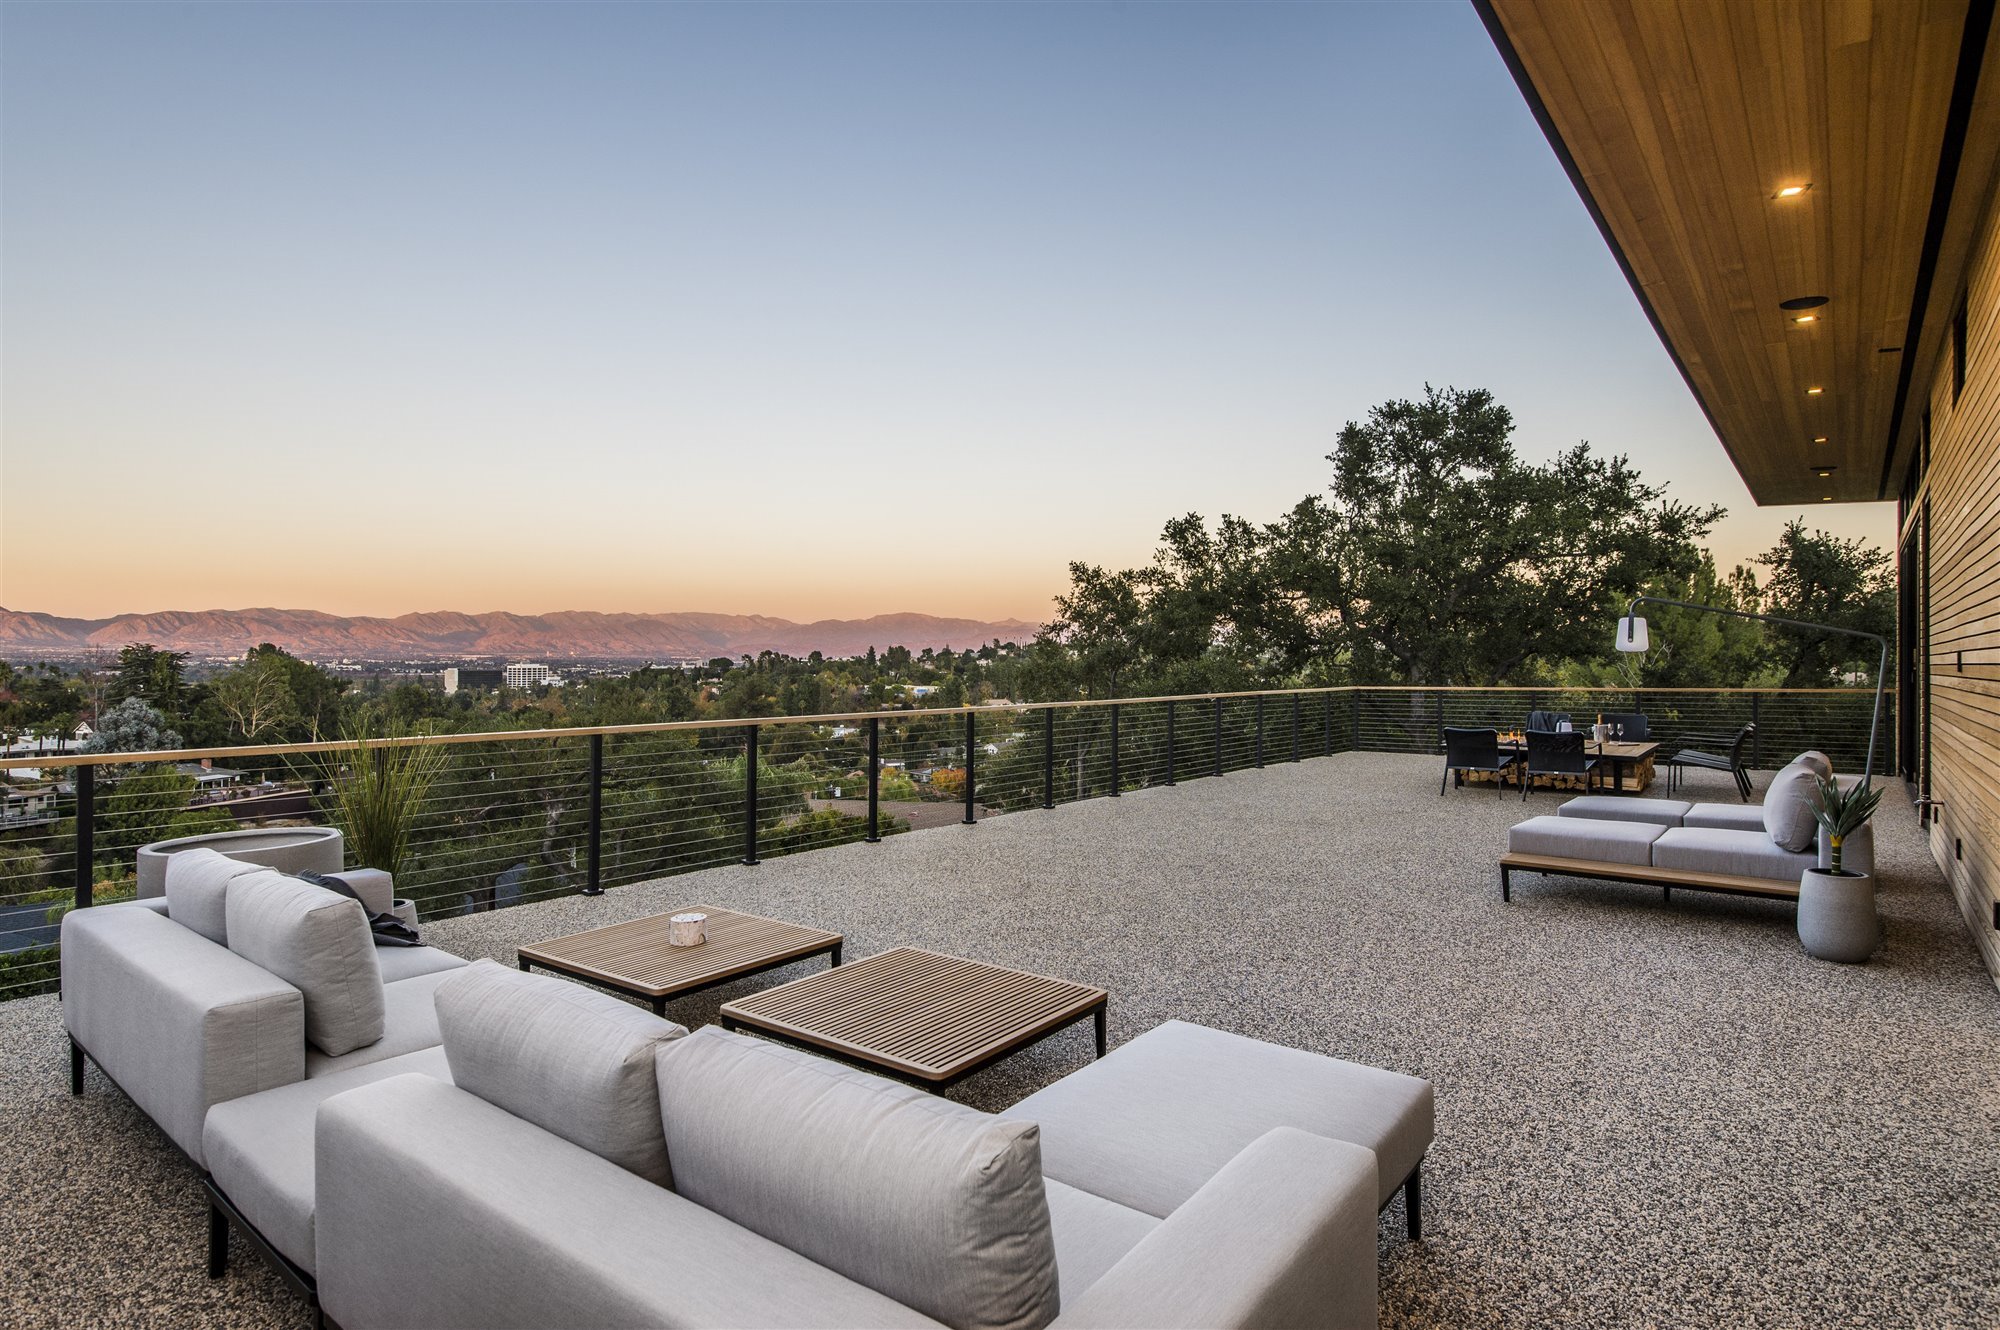 Casa moderna del actor de Modern Family Jesse Tyler Ferguson en Encino los Angeles terraza con vistas